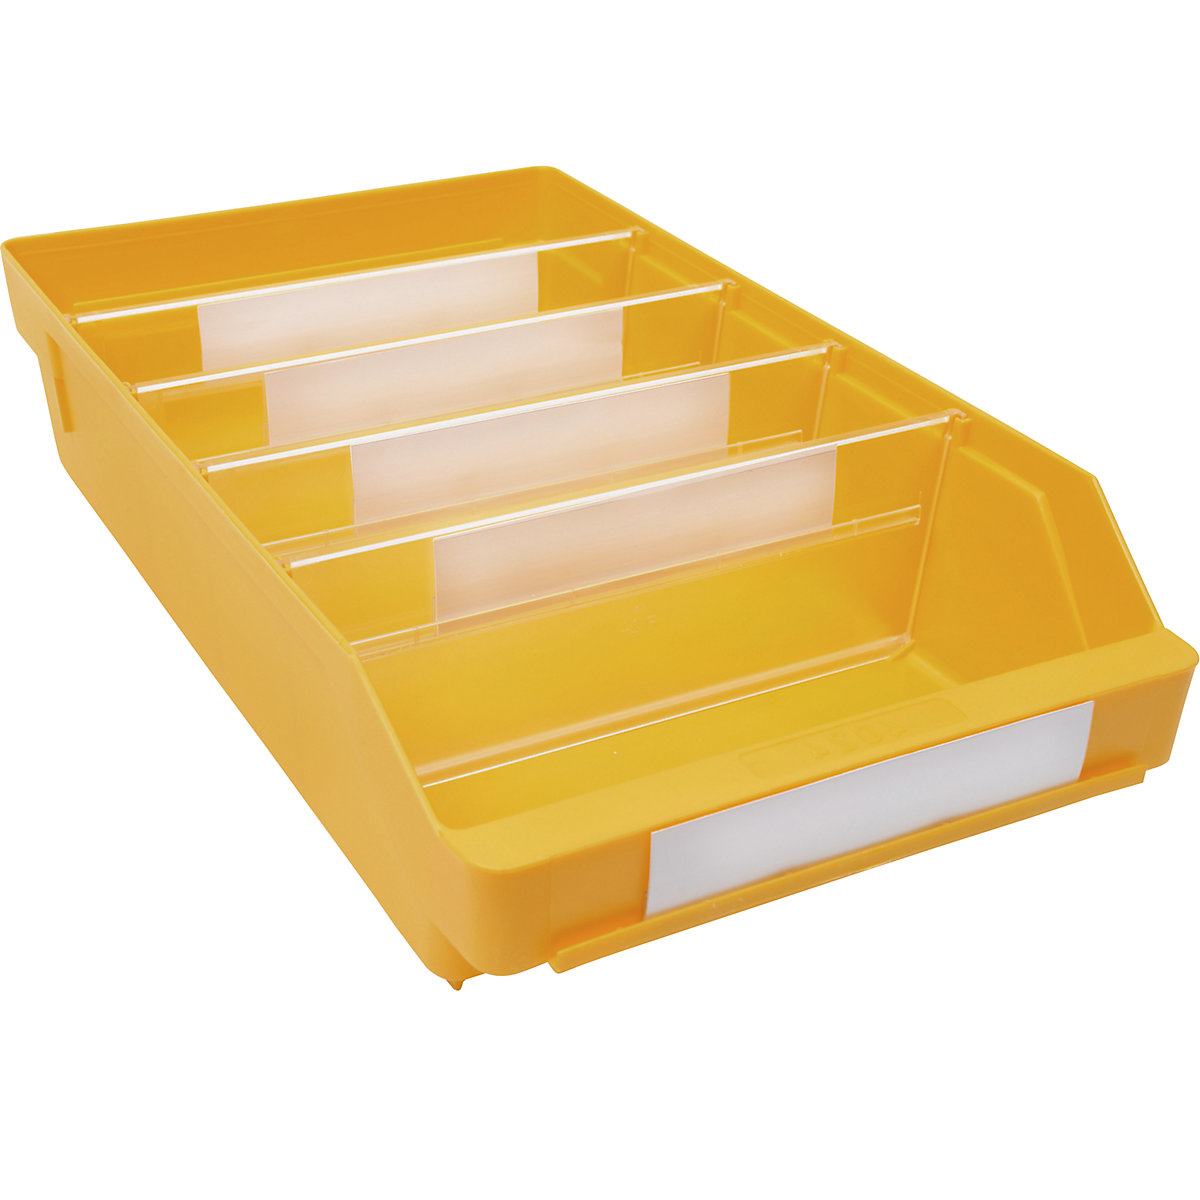 Bac de stockage en polypropylène résistant aux chocs – STEMO, coloris jaune, L x l x h 400 x 240 x 95 mm, lot de 15-14